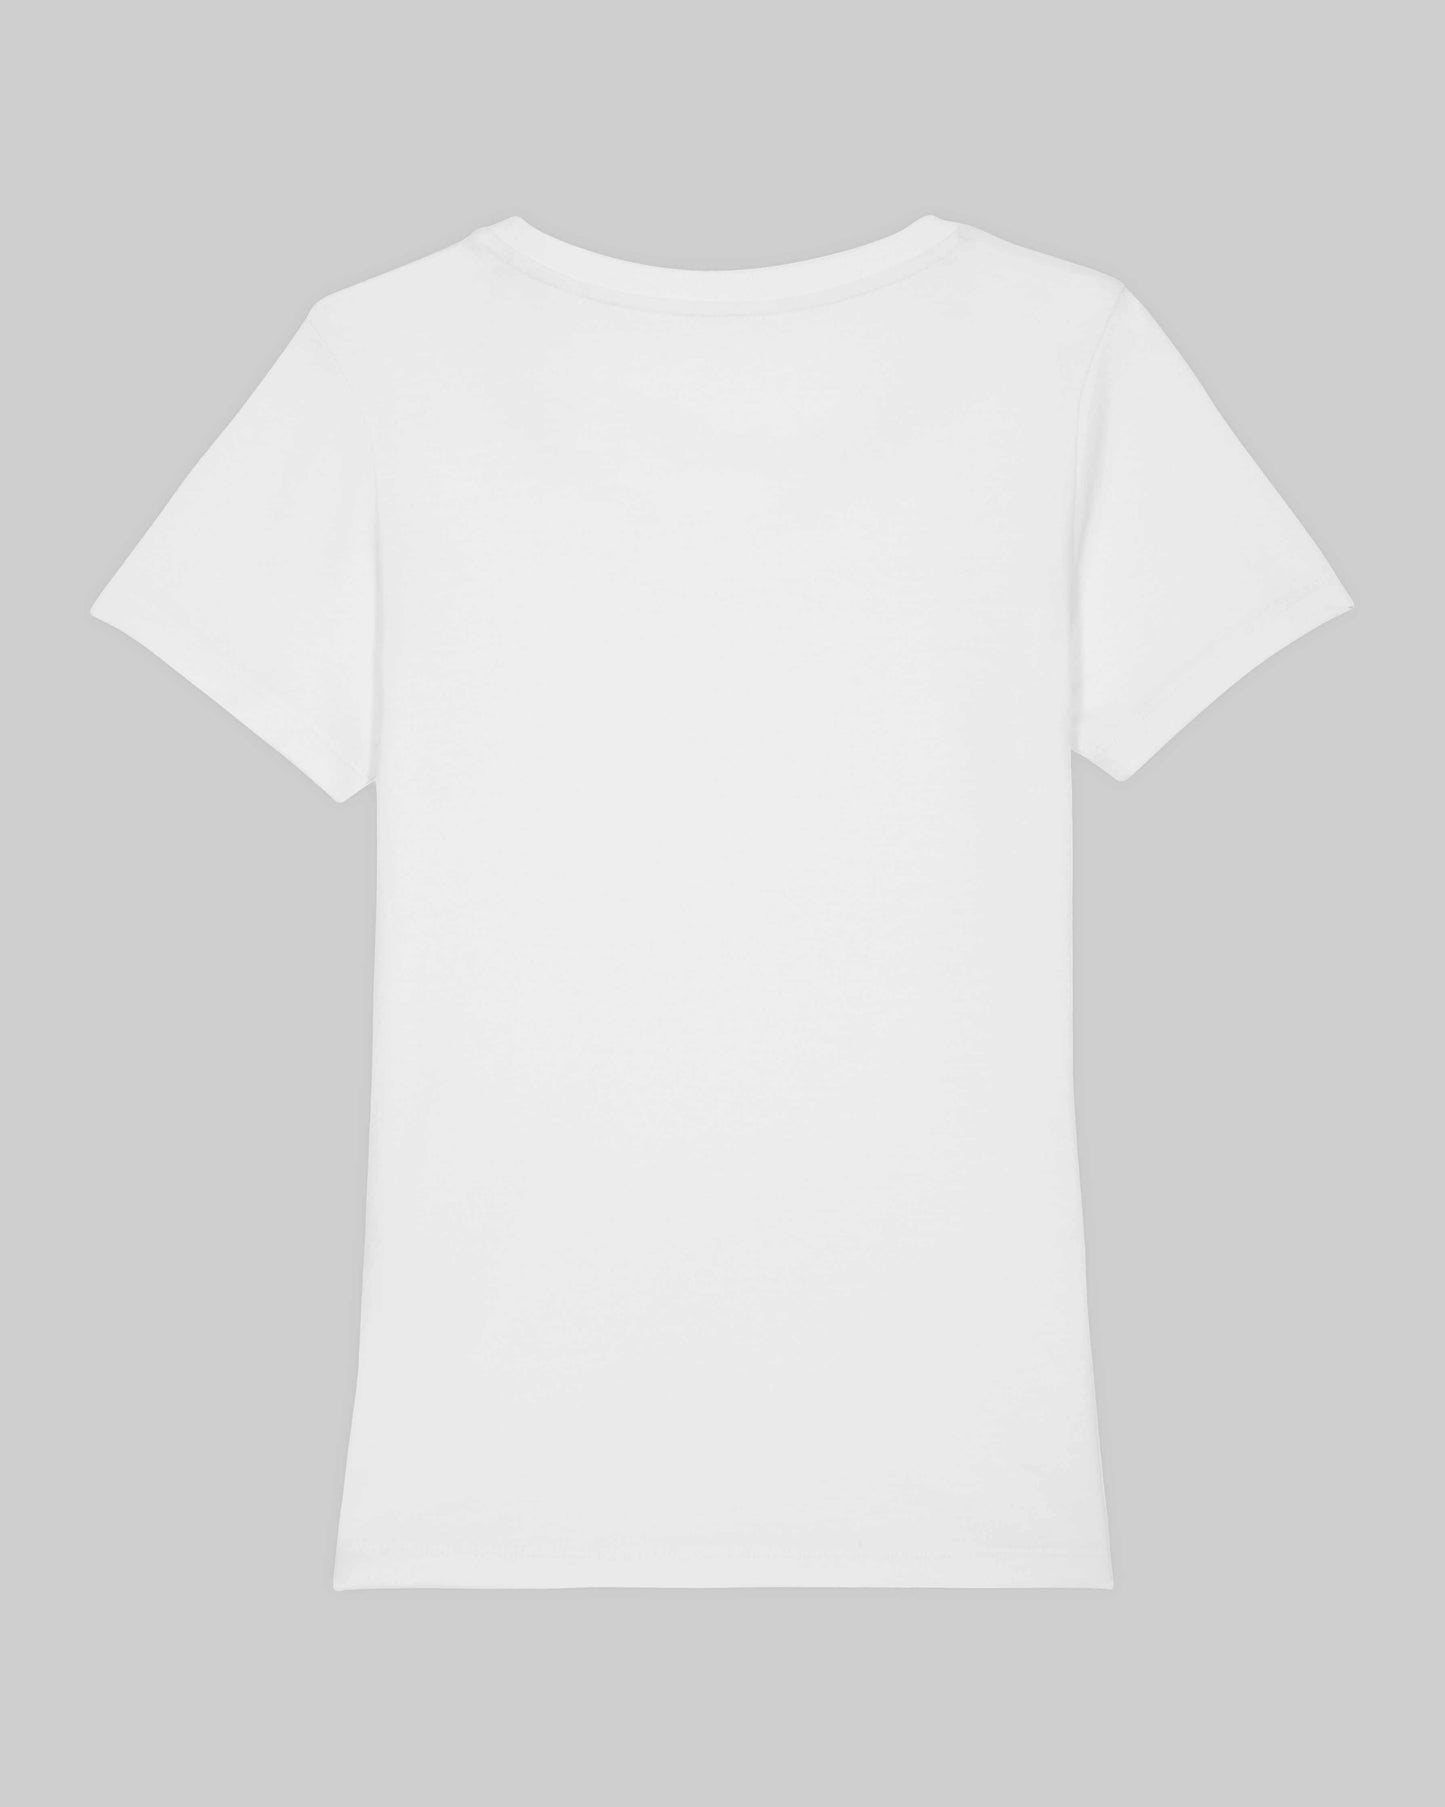 EINHORST® Organic Shirt tailliert in "Weiß" mit dem Motiv "equal Regenbogen" in der Kombination schwarzer Regenbogen mit schwarzer Schrift, Bild von Shirt von hinten